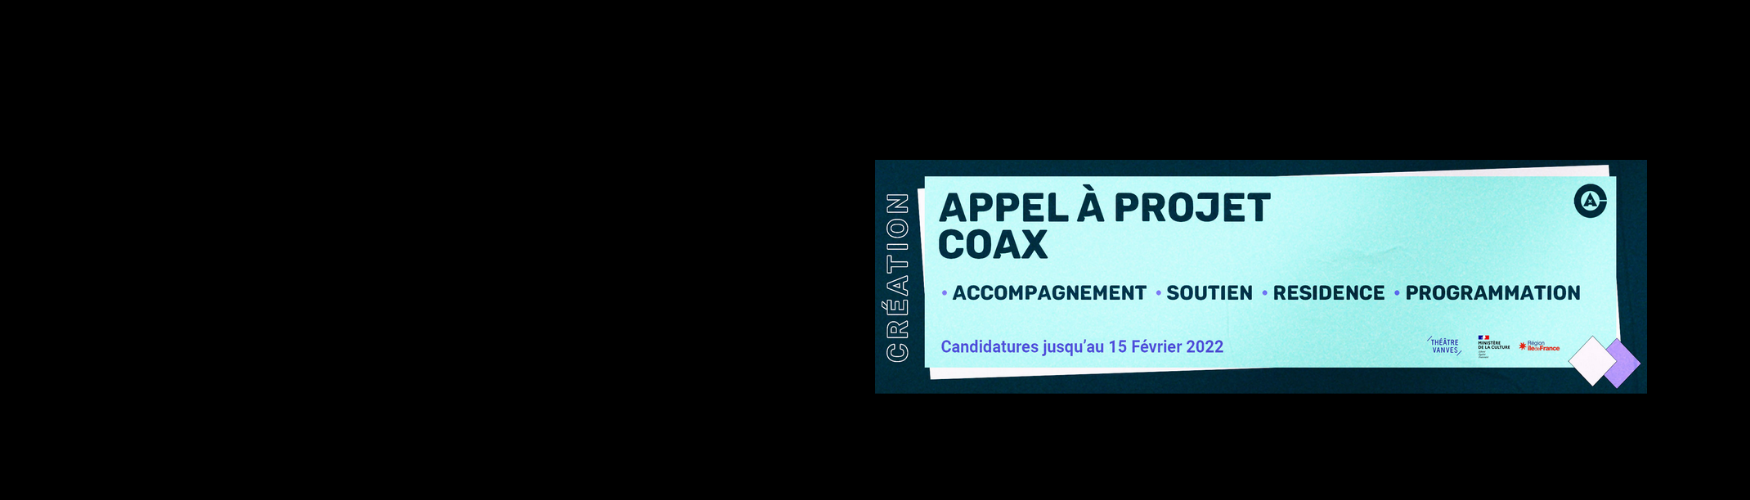 Appel à projet COAX